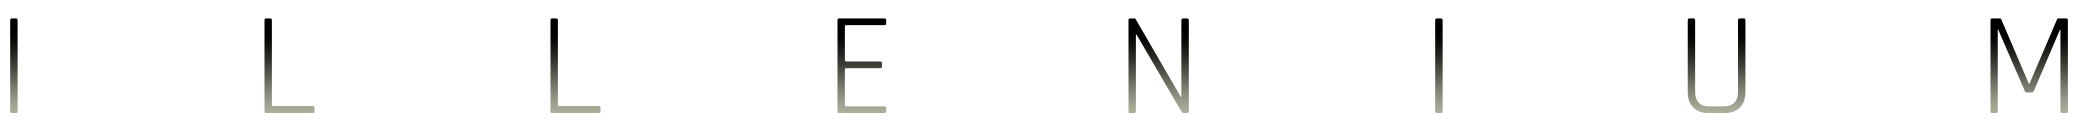 Illenium Staging logo